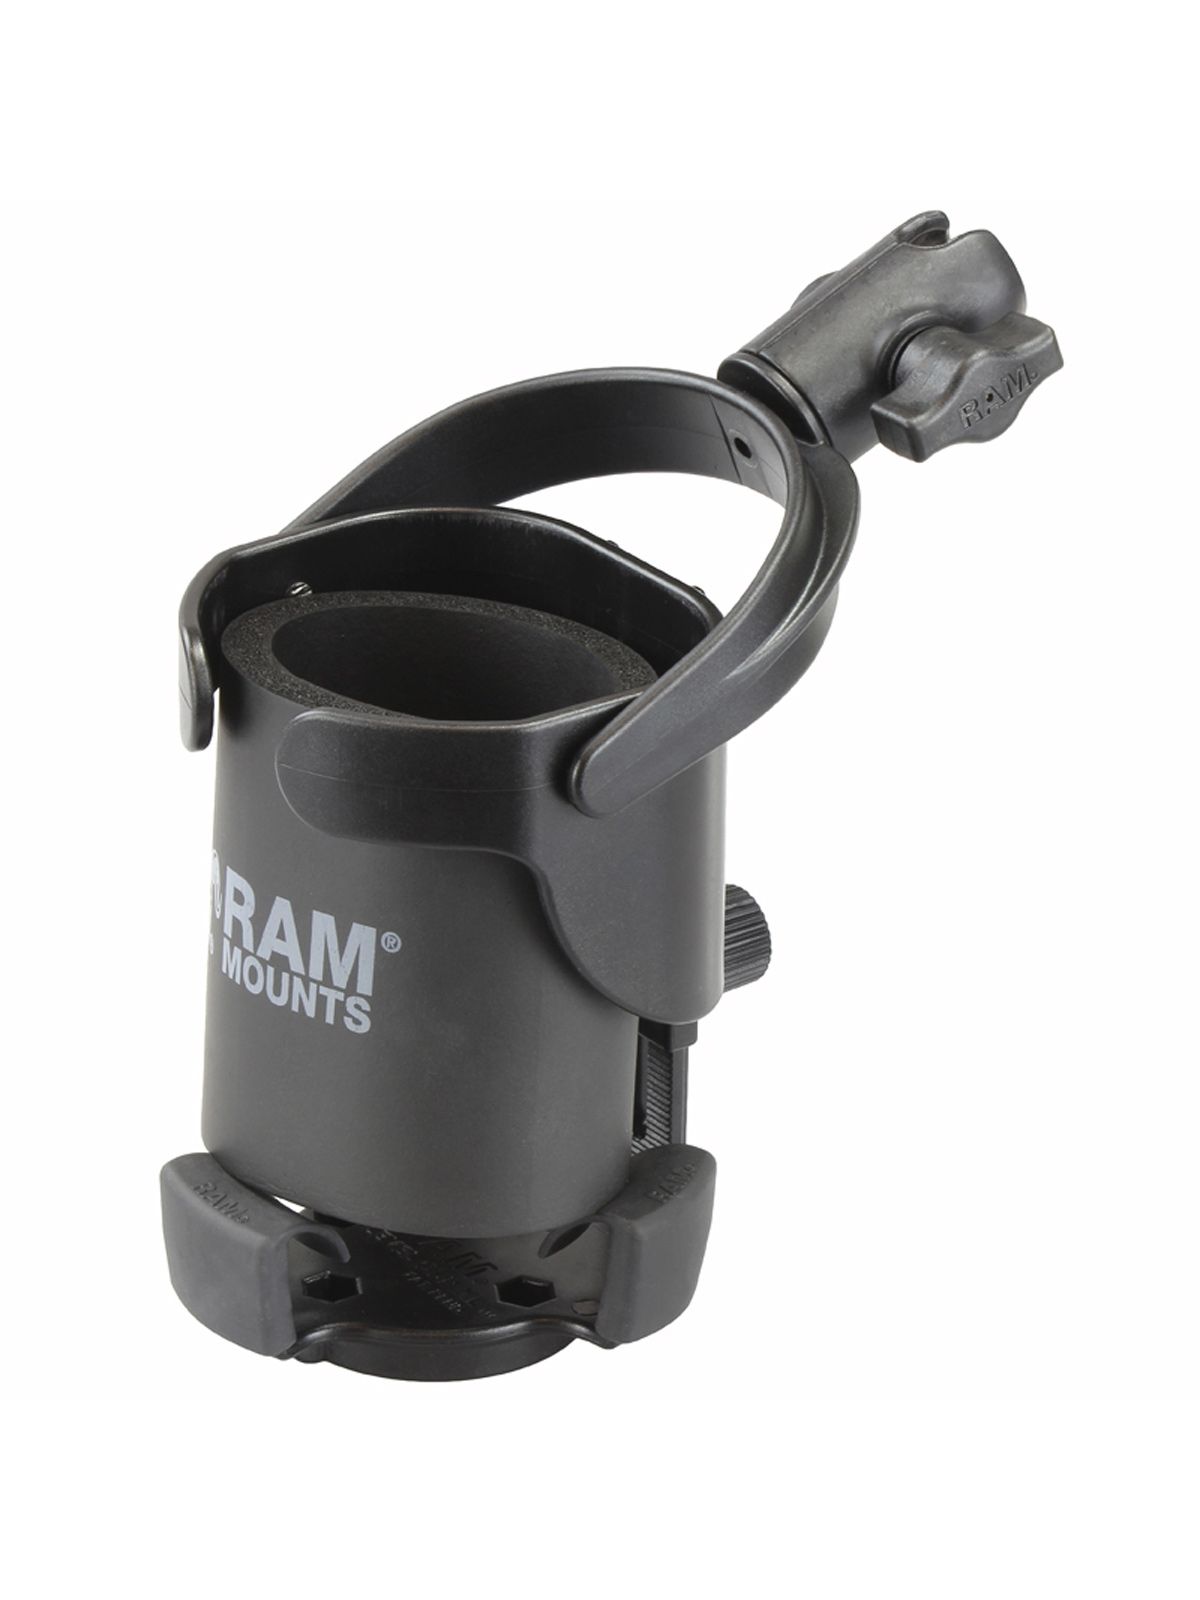 RAM Mounts Verbundstoff Getränkehalter-Set Level Cup XL - mit Octagon-Verbindungsarm, B-Kugel (1 Zoll), im Polybeutel